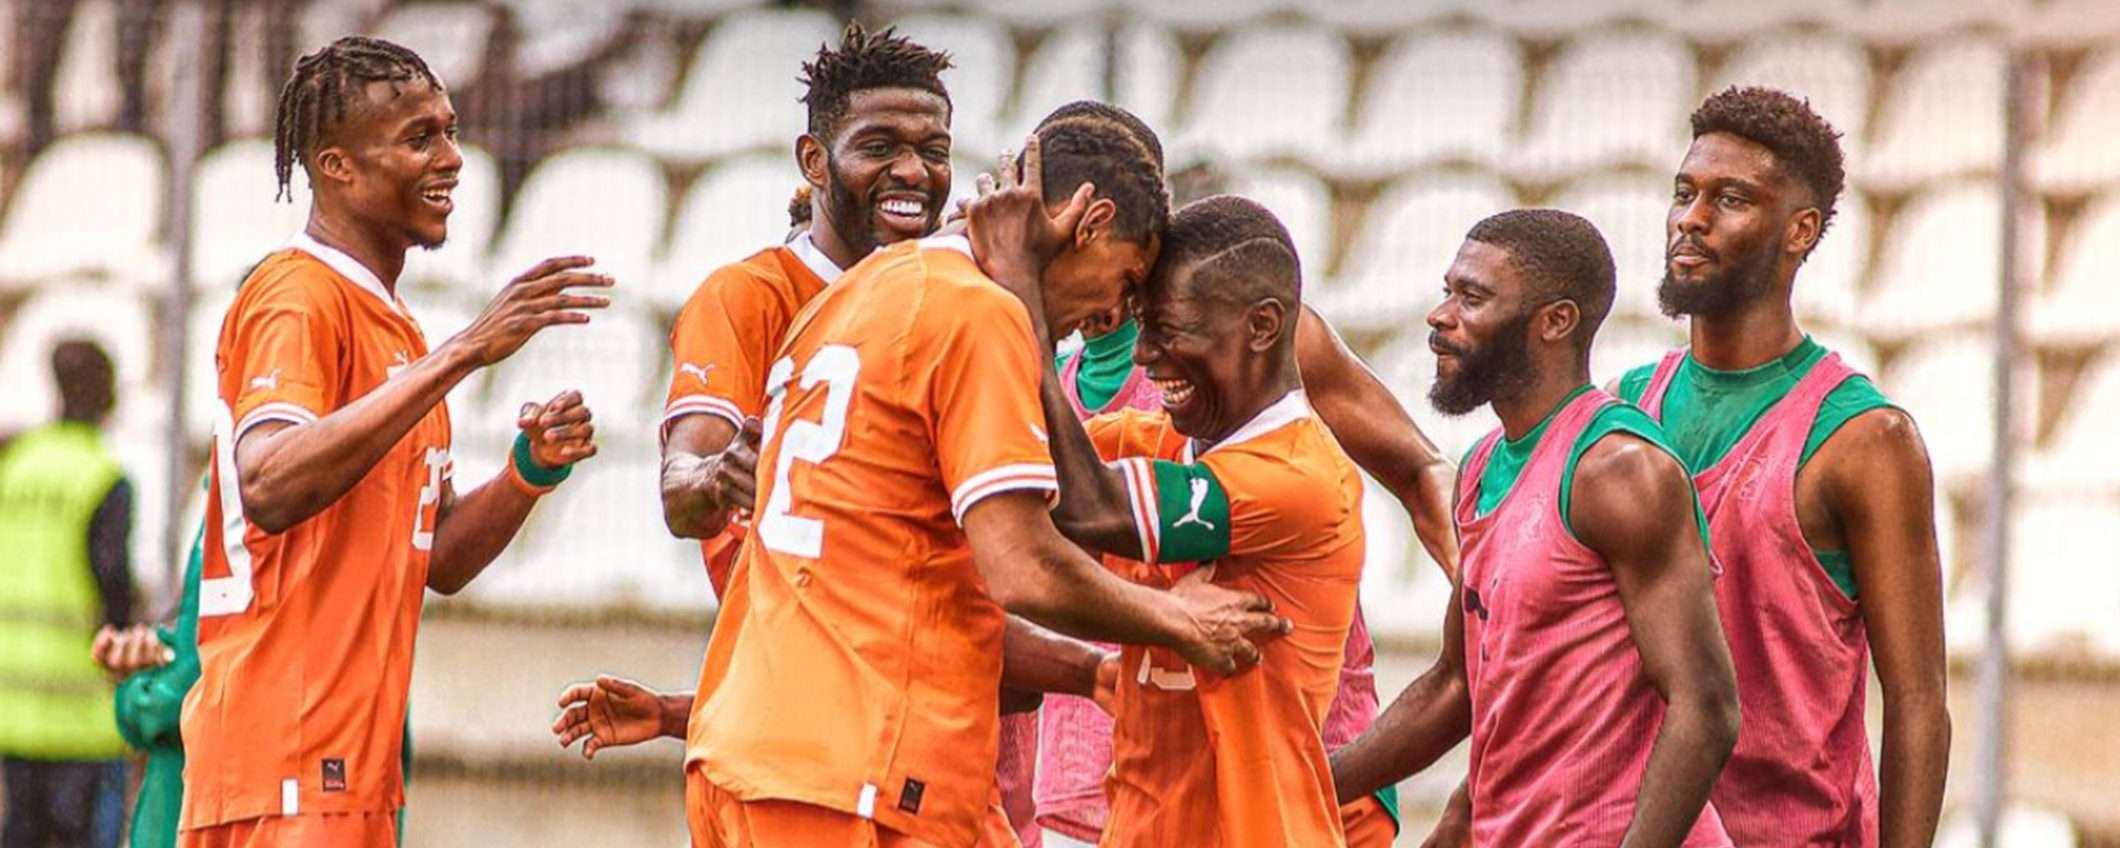 Come vedere Guinea Equatoriale-Costa d'Avorio in streaming dall'estero